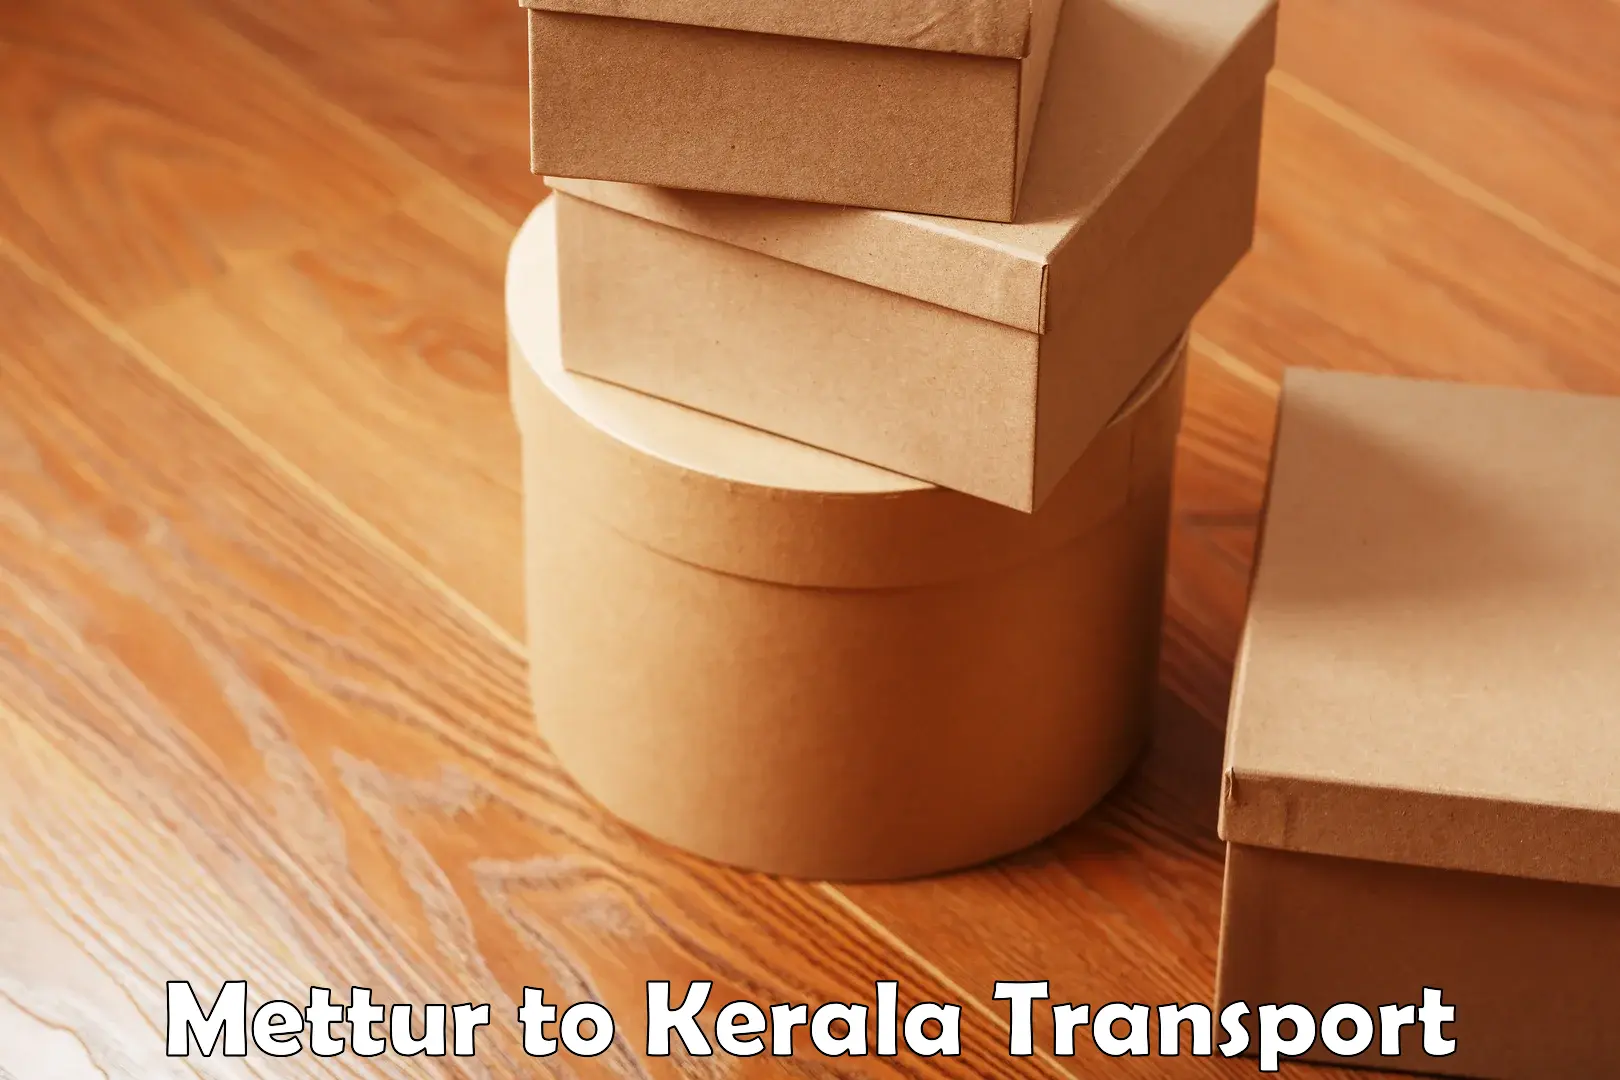 Cargo train transport services Mettur to Adoor